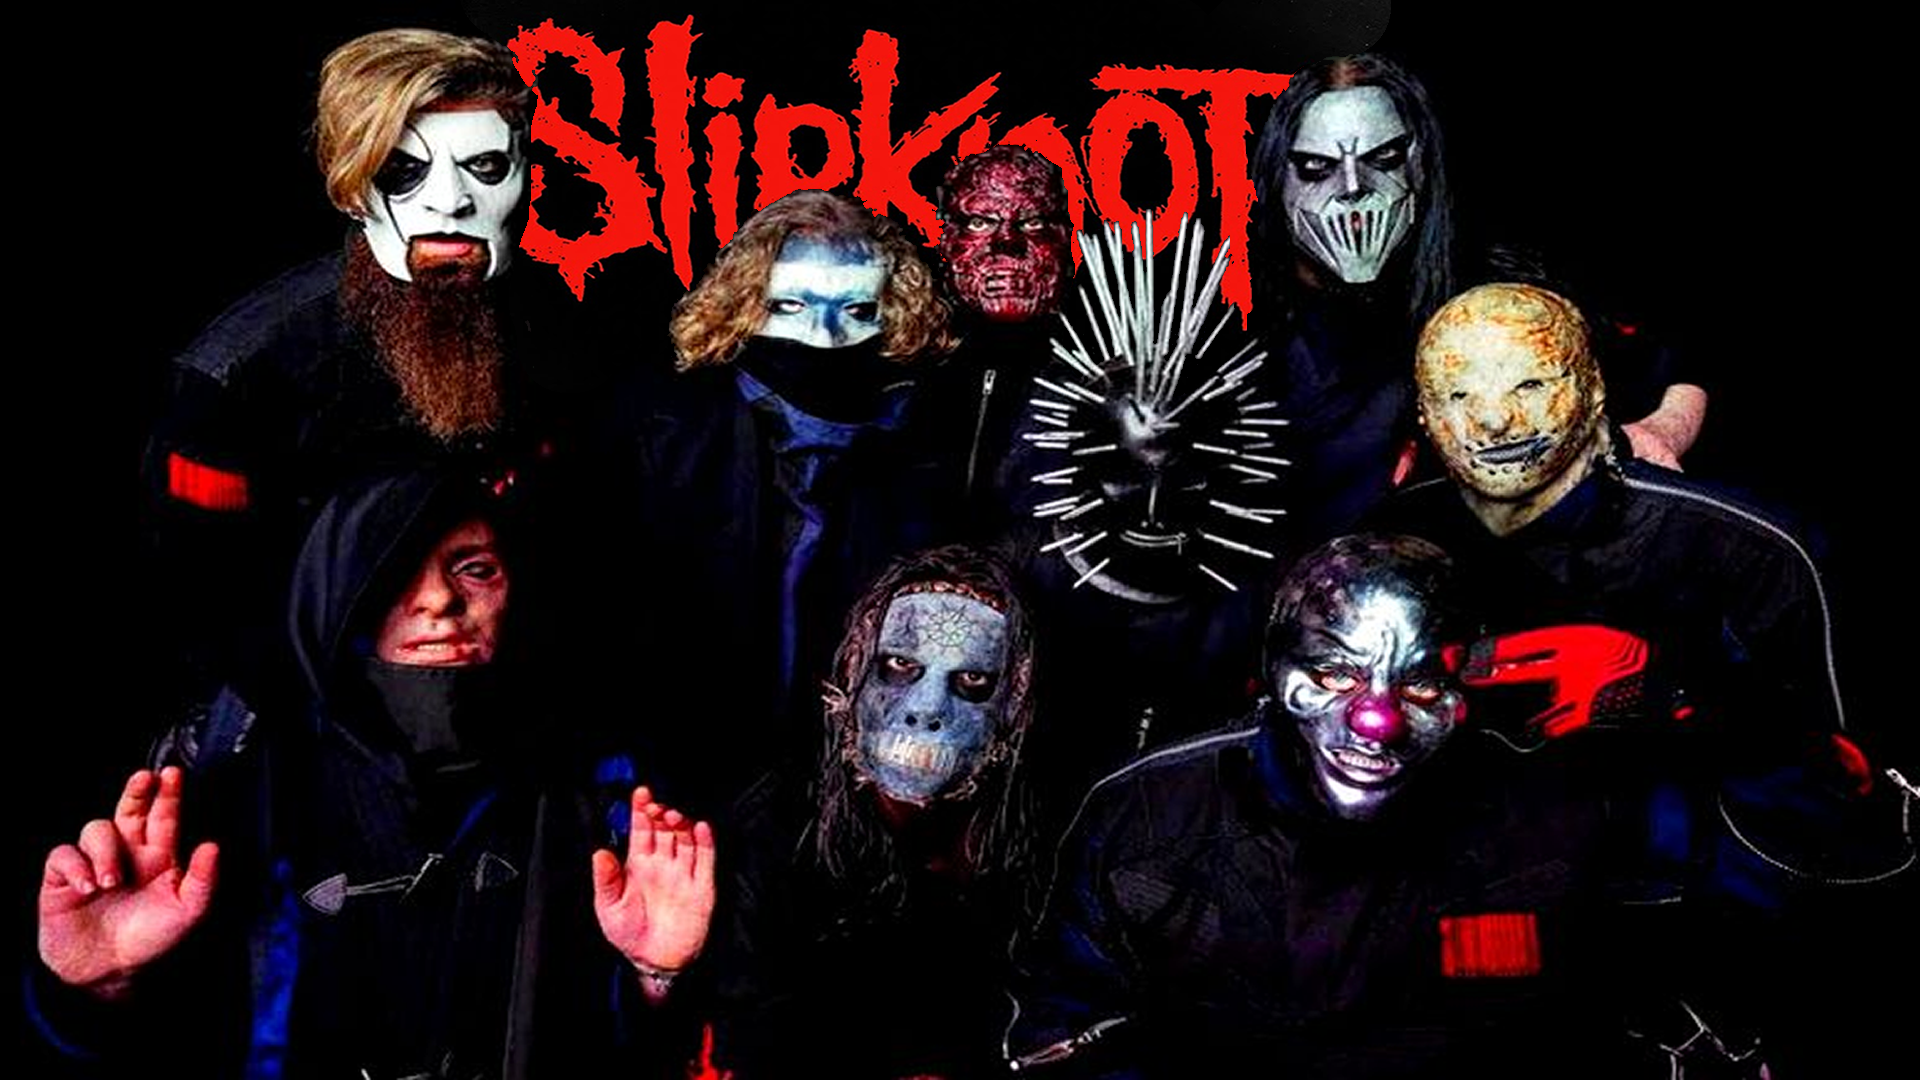 Slipknot Wallpaper - Slipknot Wallpaper 2018 (60+ images) We